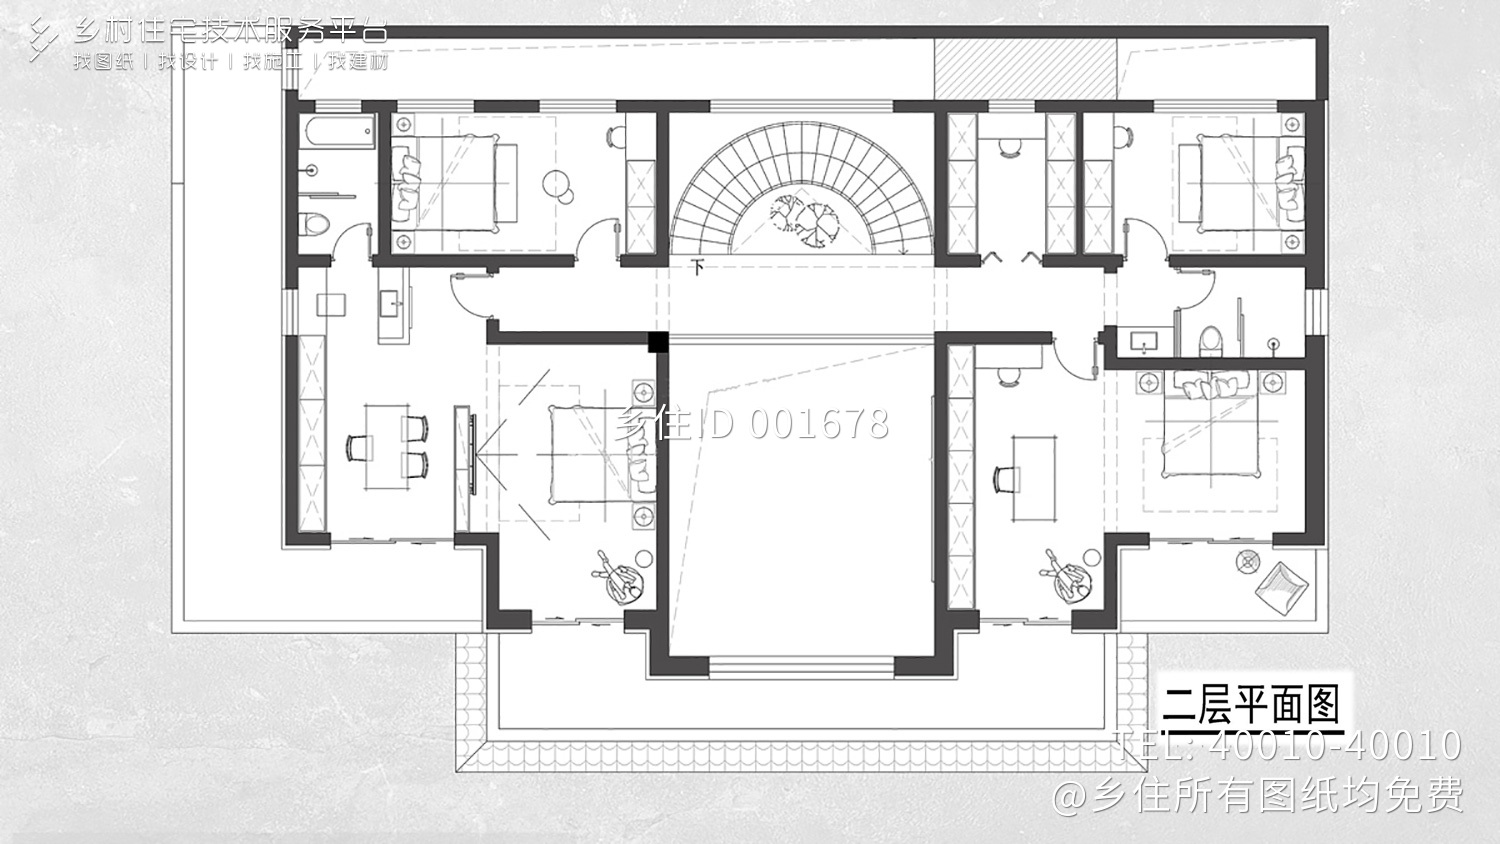 北京密云王家二层新中式别墅自建房设计图纸